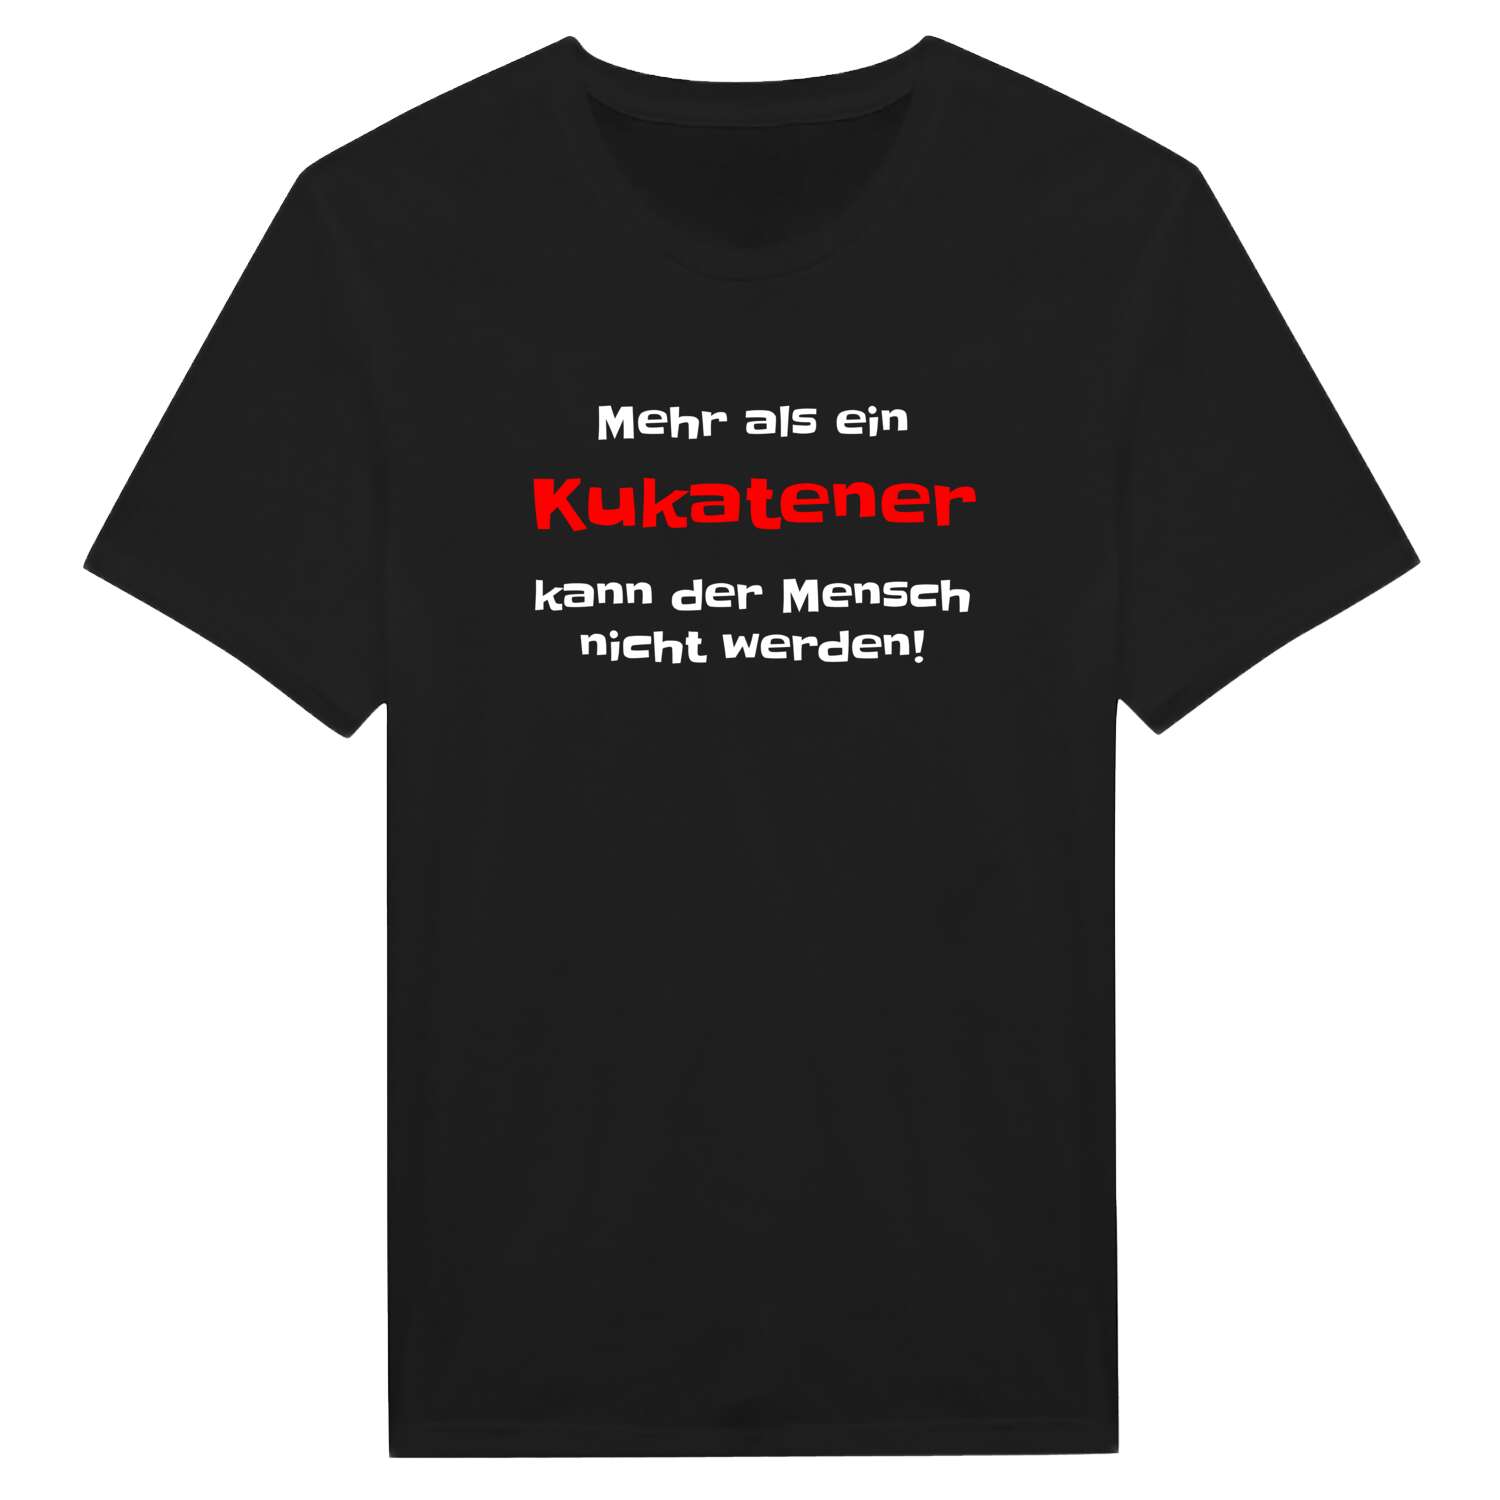 Kukate T-Shirt »Mehr als ein«